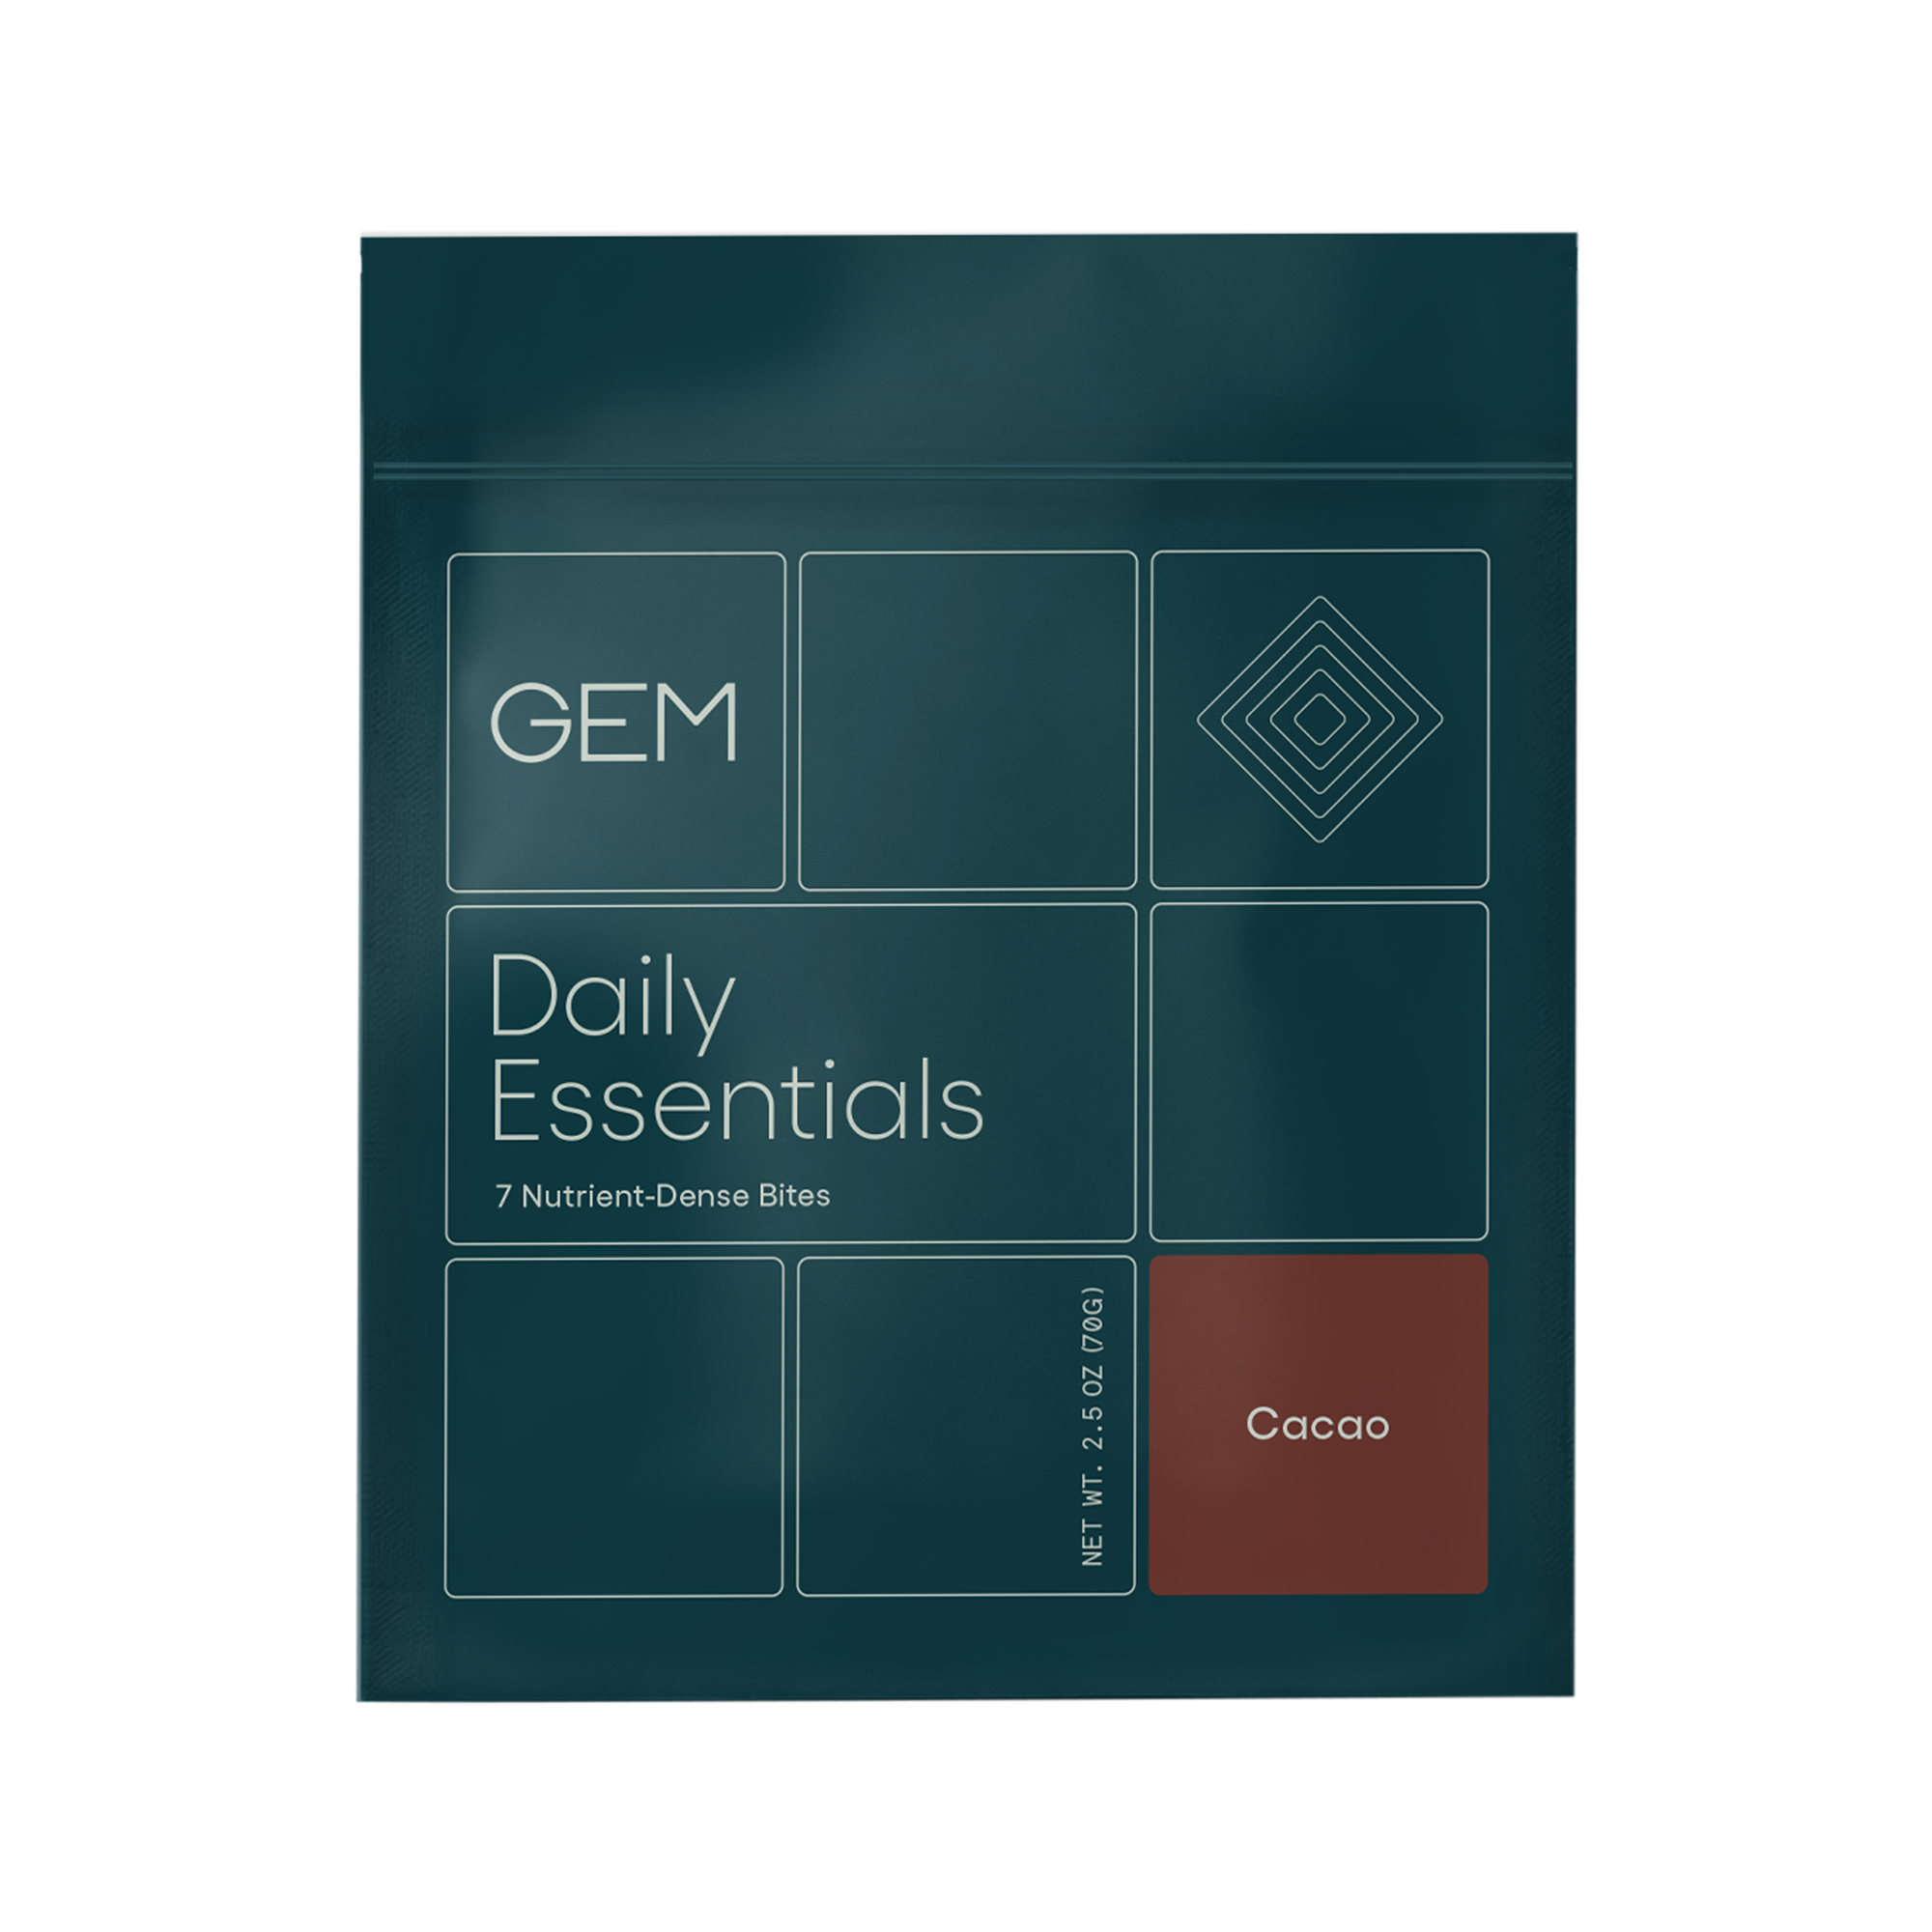 GEM Daily Essentials Vitamin Bites